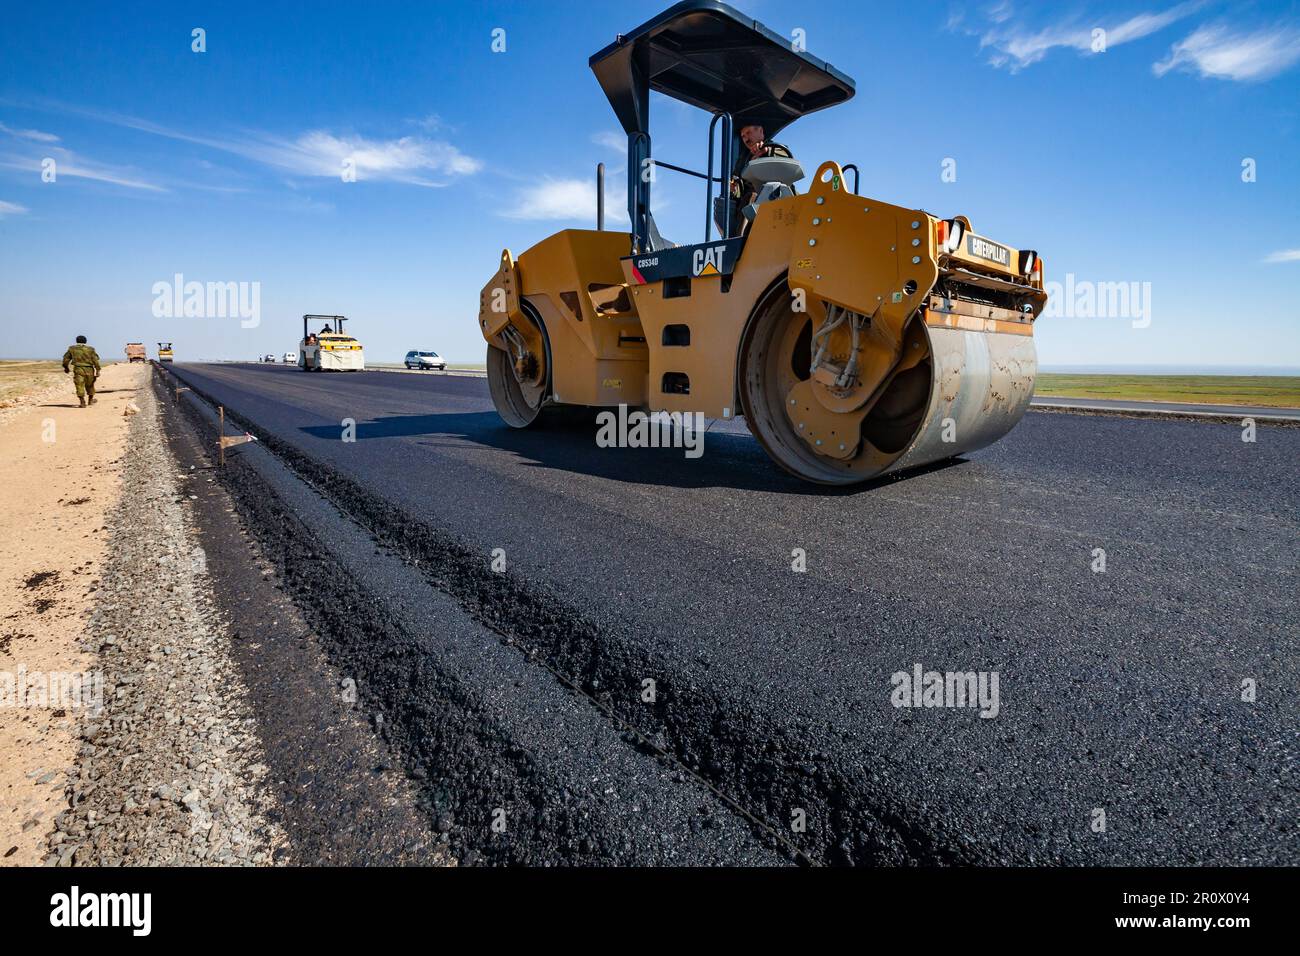 Province de Kyzylorda, Kazakhstan, 29 avril 2012 : construction de l'autoroute Europe occidentale-Chine occidentale. Le compacteur tandem vibrant Caterpillar aplatit l'asphalte Banque D'Images